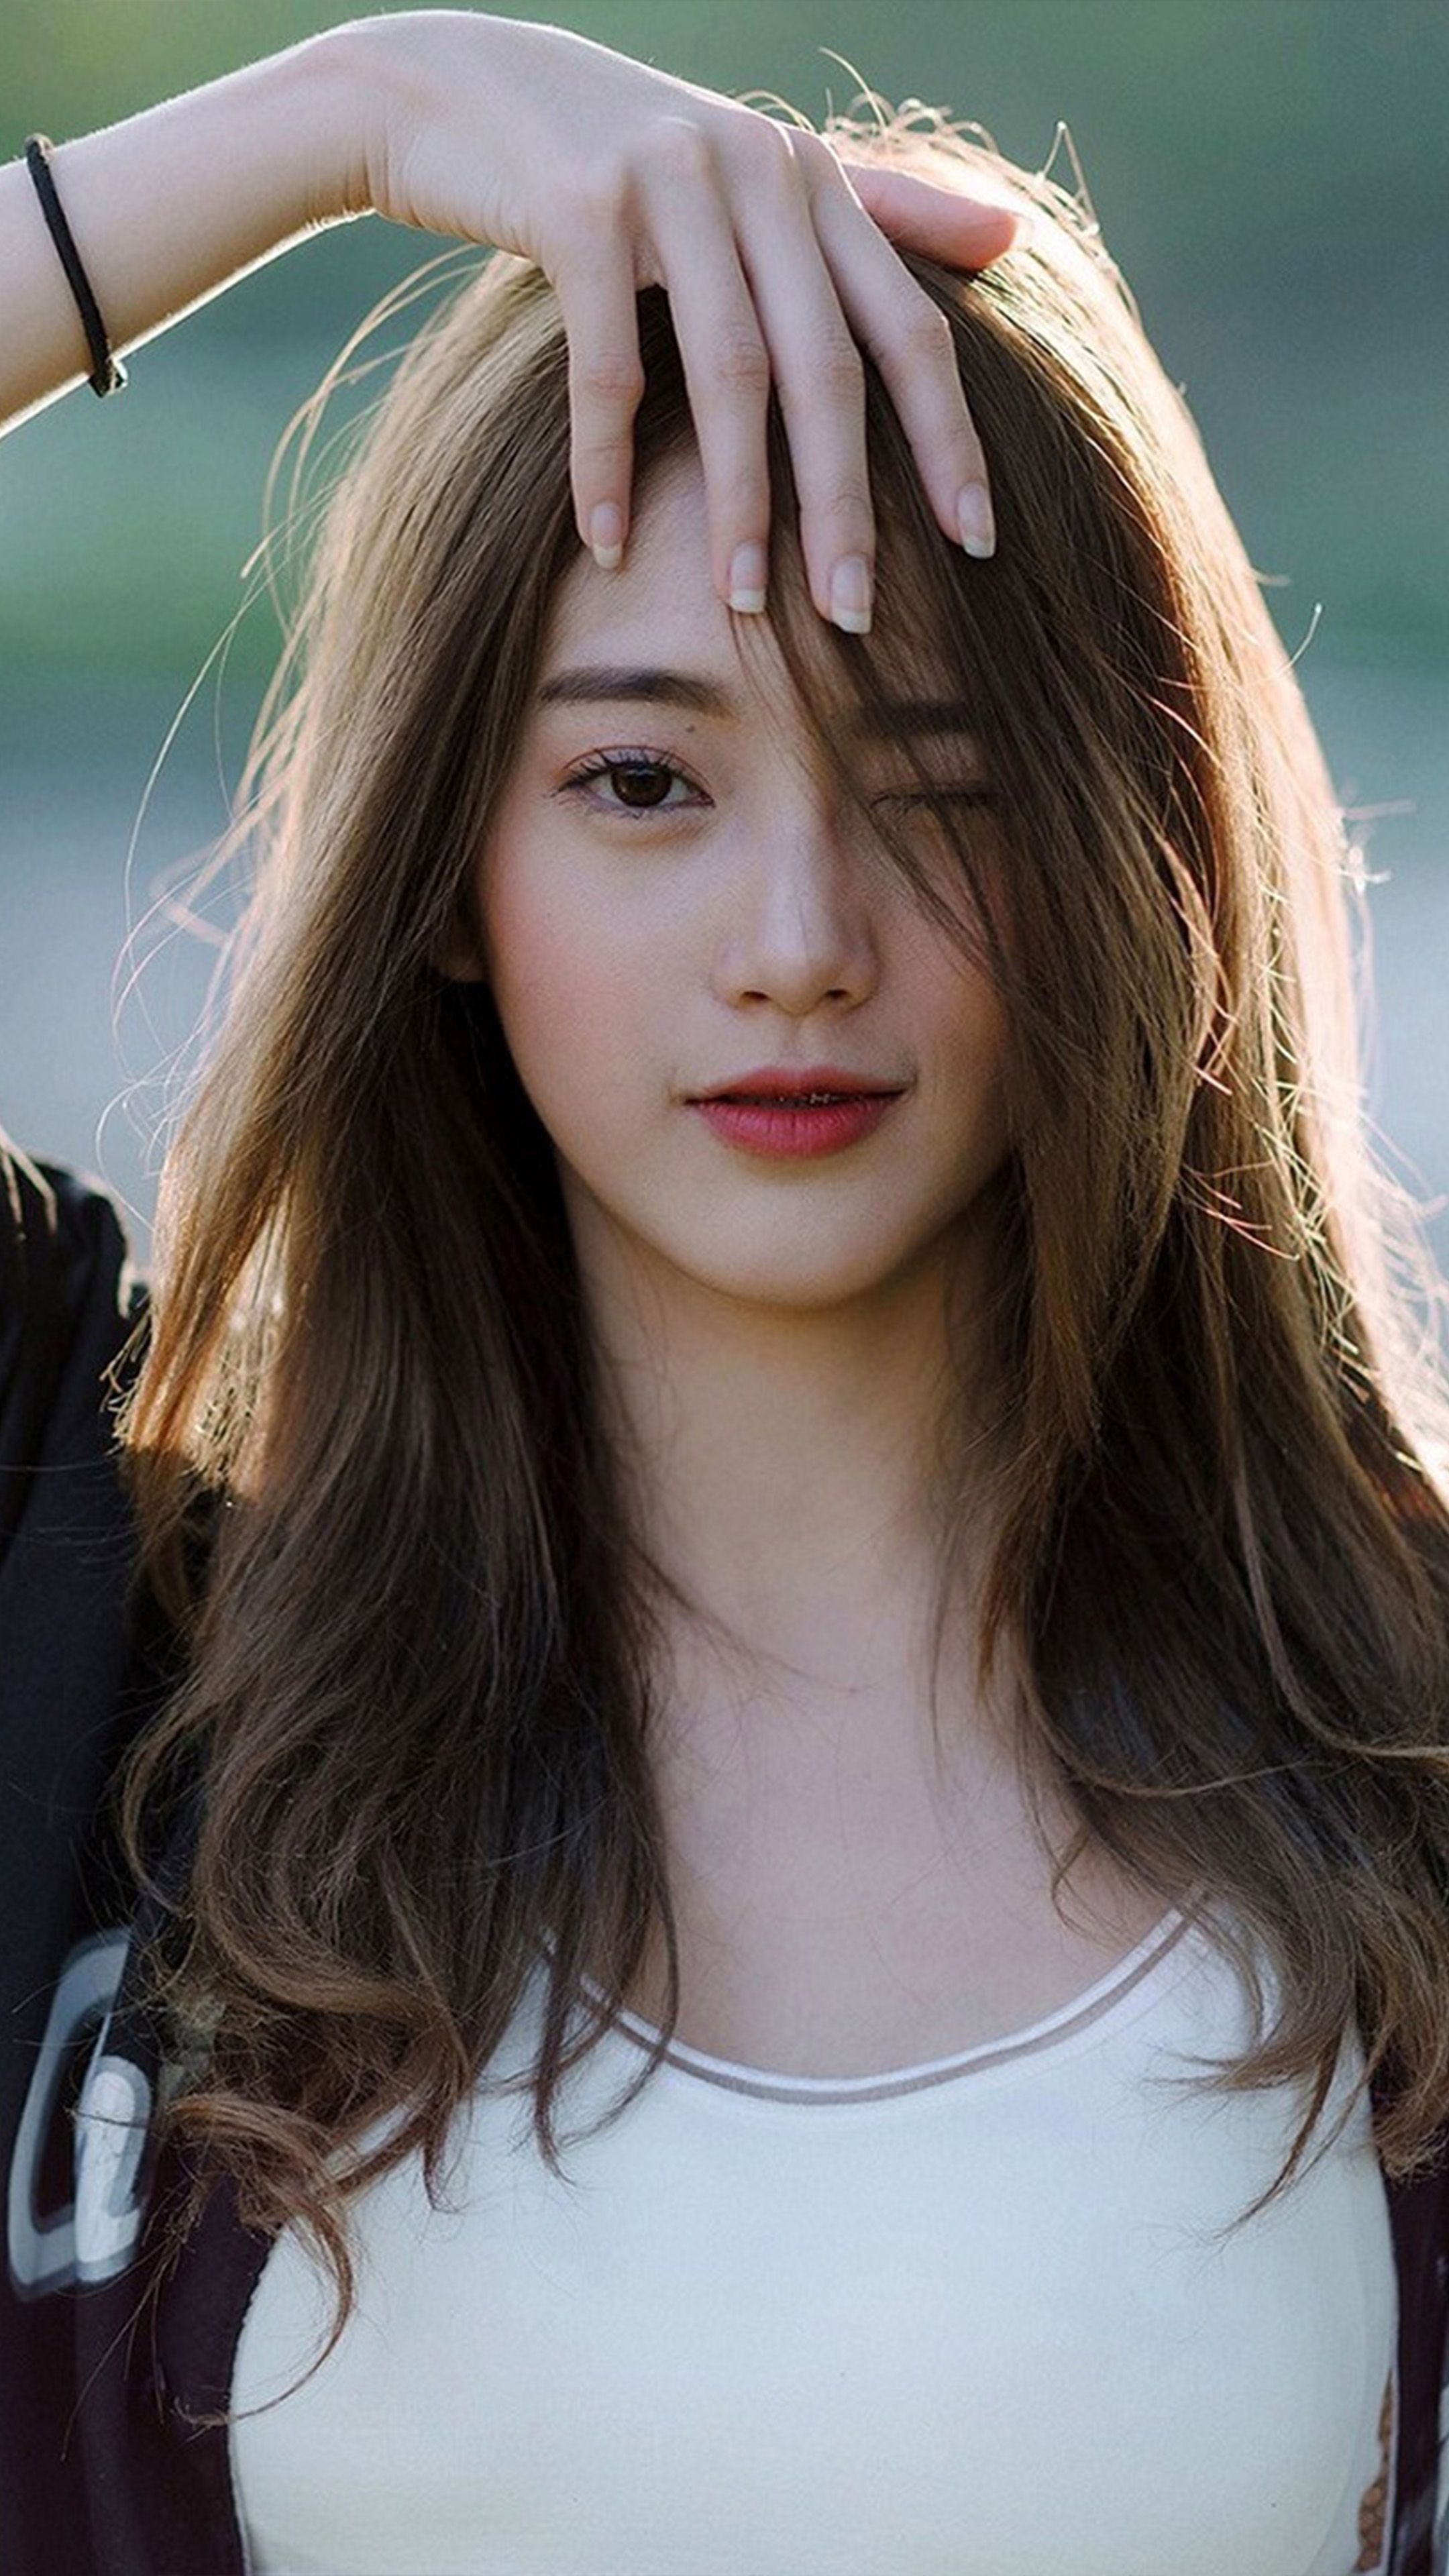 Most Beautiful Women: Most beautiful Chinese girls, Asian appearance, A headshot. 2160x3840 4K Wallpaper.